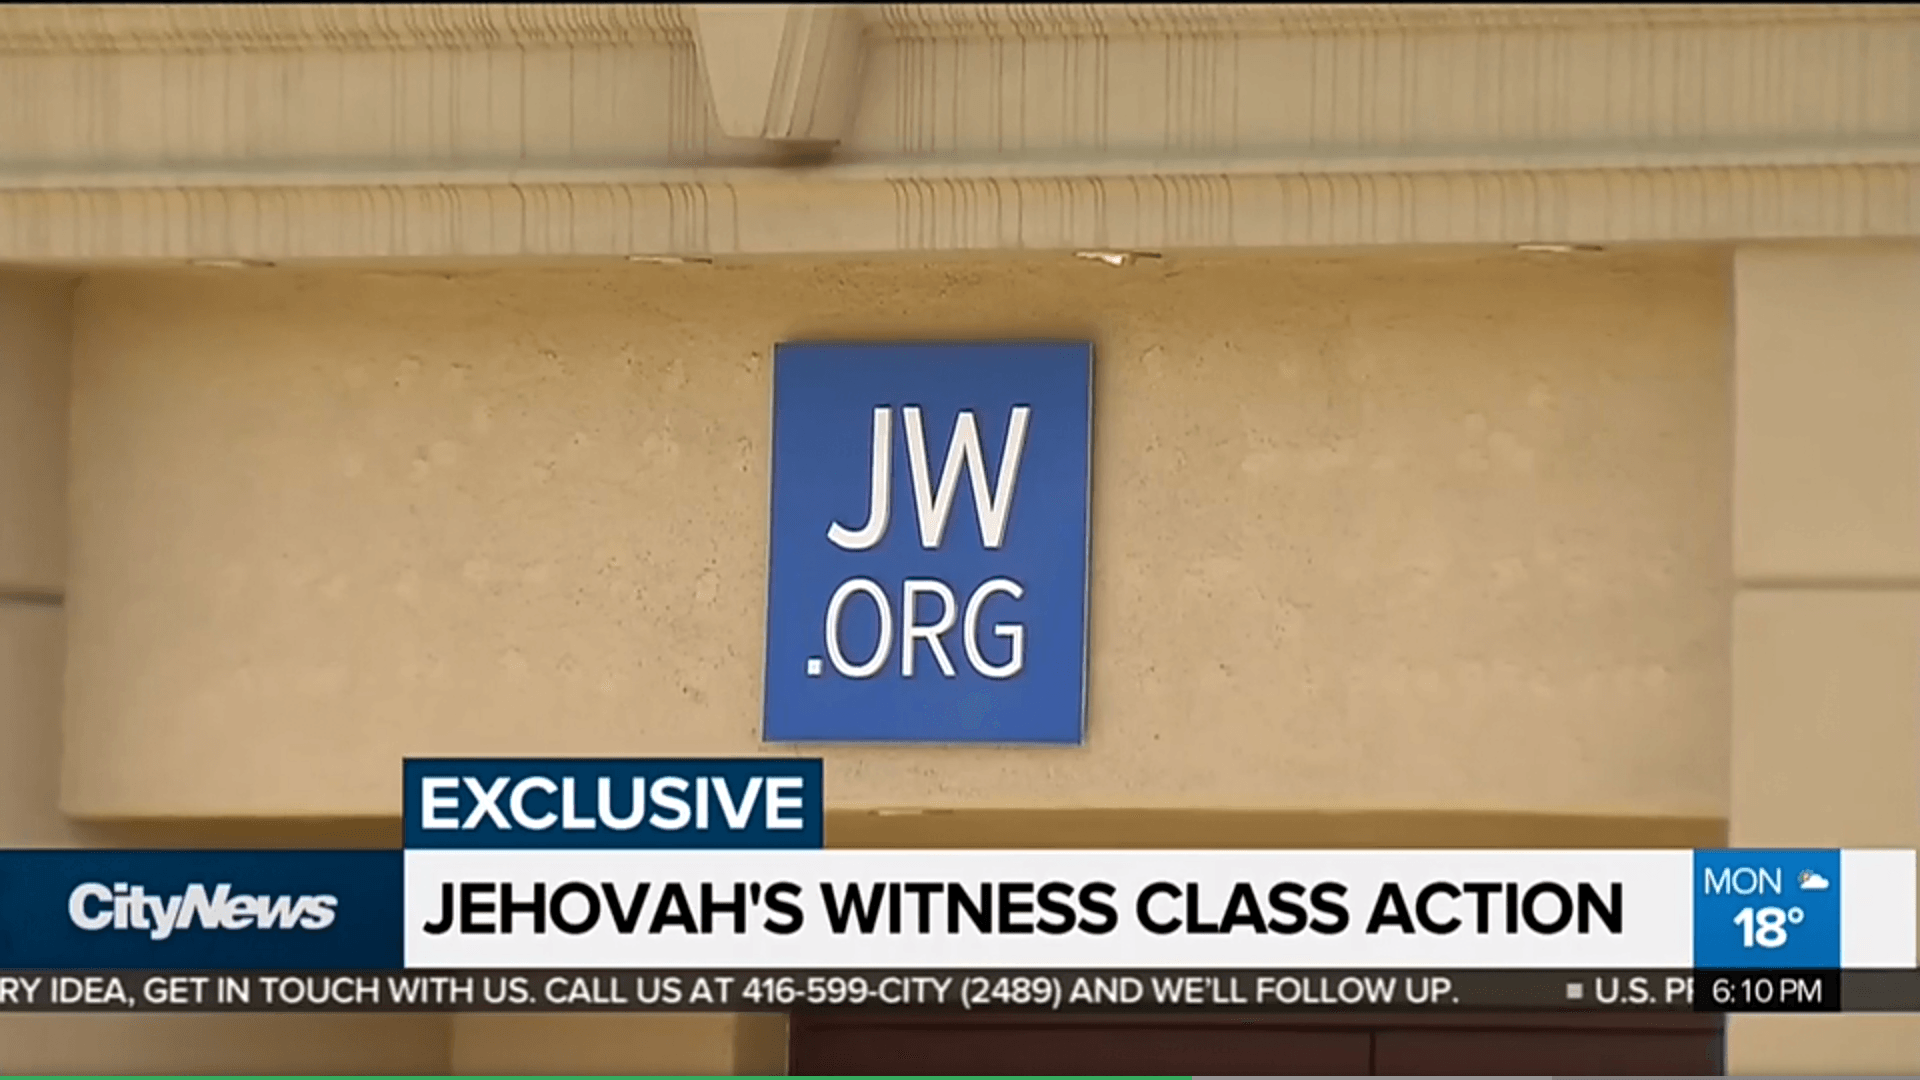 Jehovas Zeugen News Sammelklage 66 Millionen Kindesmissbrauch Pädophile Jehovas Zeugen Wahrheiten jetzt! 66 Millionen Kanadische Dollar-Sammelklage gegen Zeugen Jehovas wegen sexuellem Missbrauch